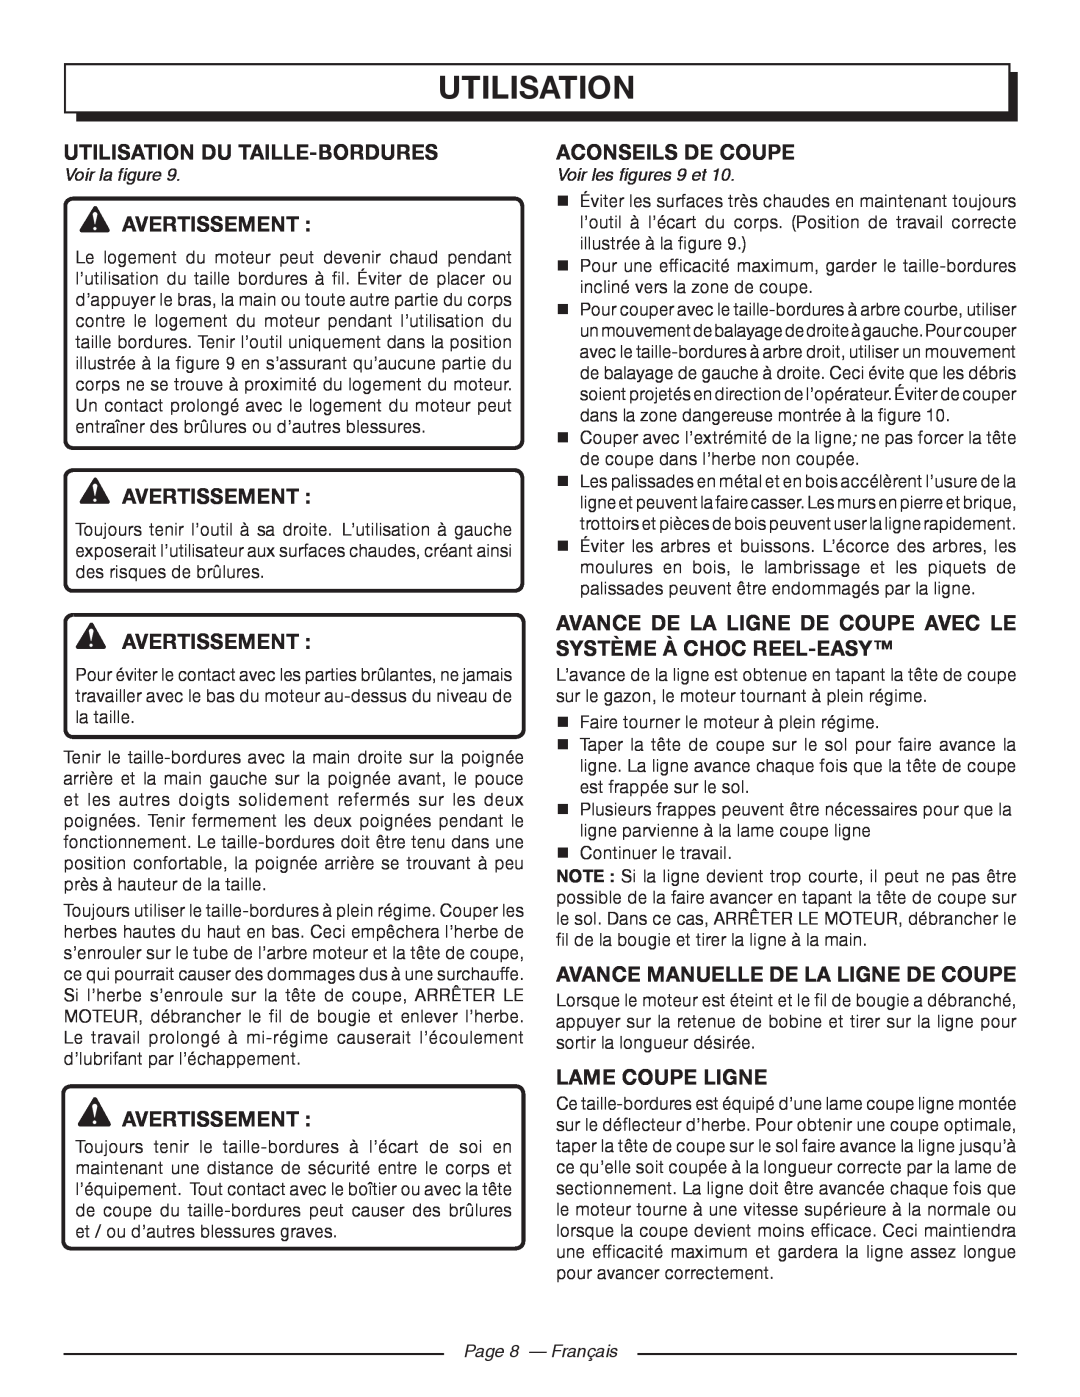 Homelite UT32650 Utilisation Du Taille-Bordures, Aconseils De Coupe, Avance Manuelle De La Ligne De Coupe, Avertissement  